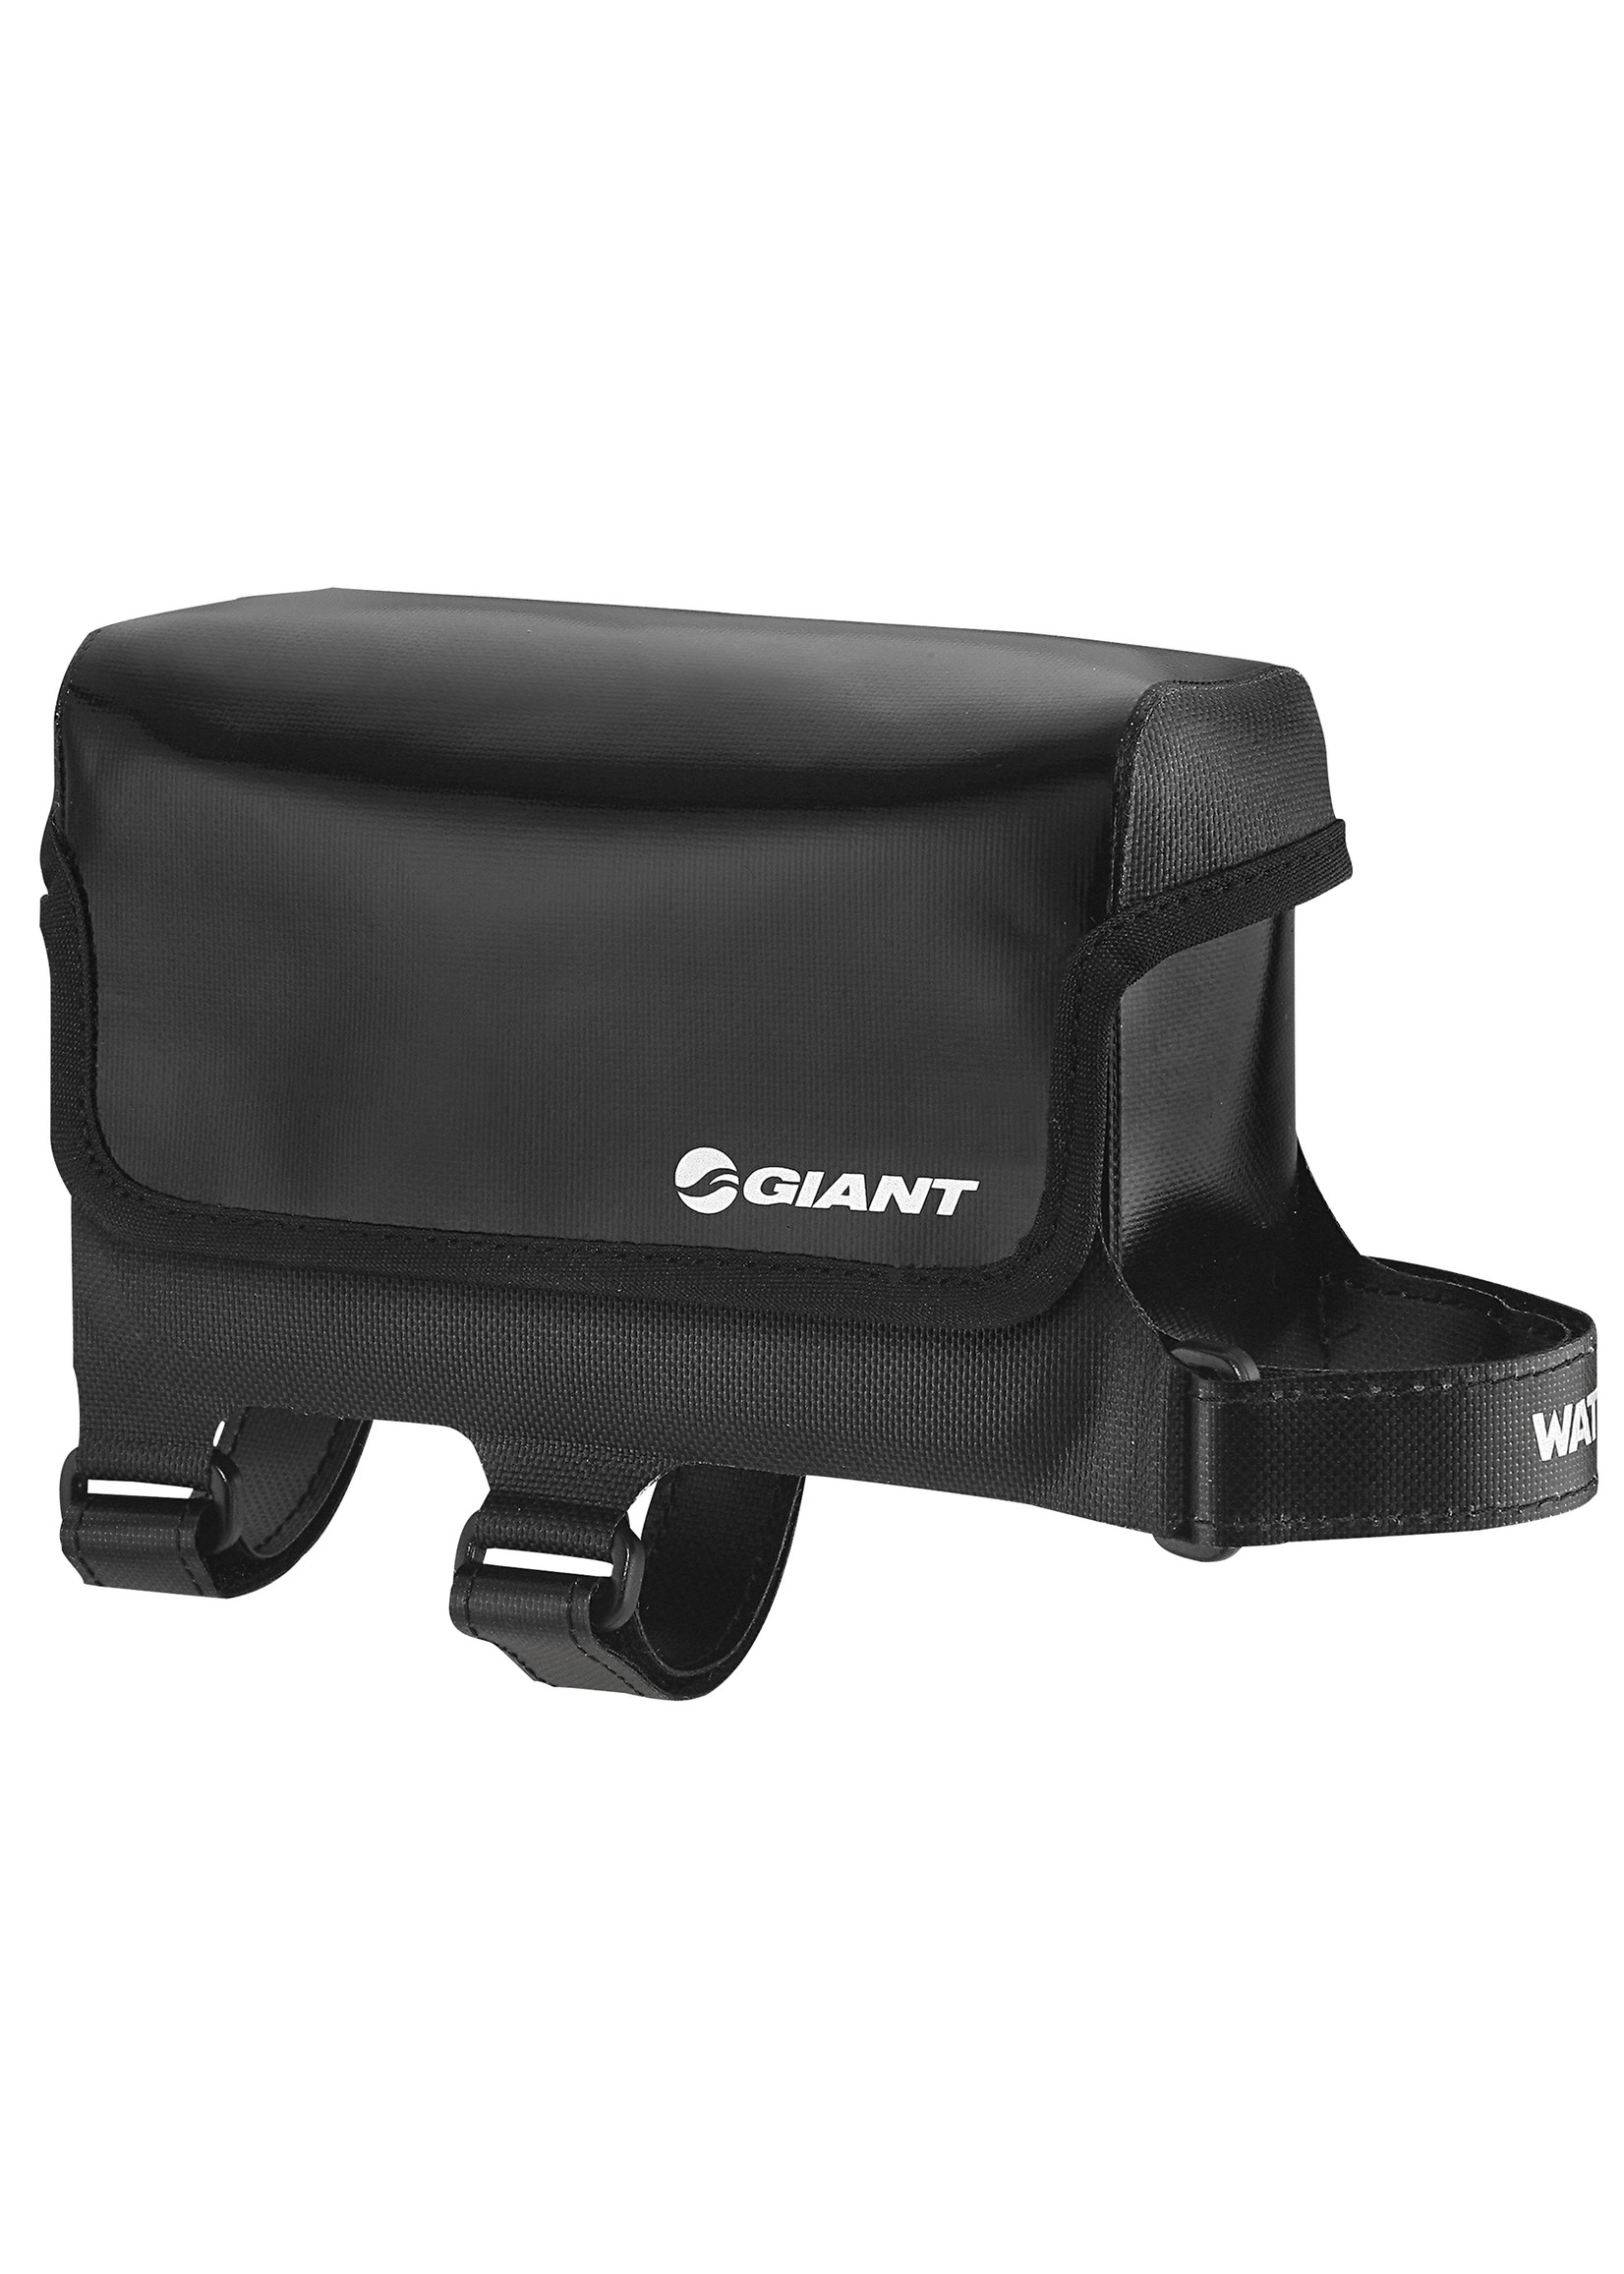 Giant GNT Waterproof Top Tube Bag LG Black